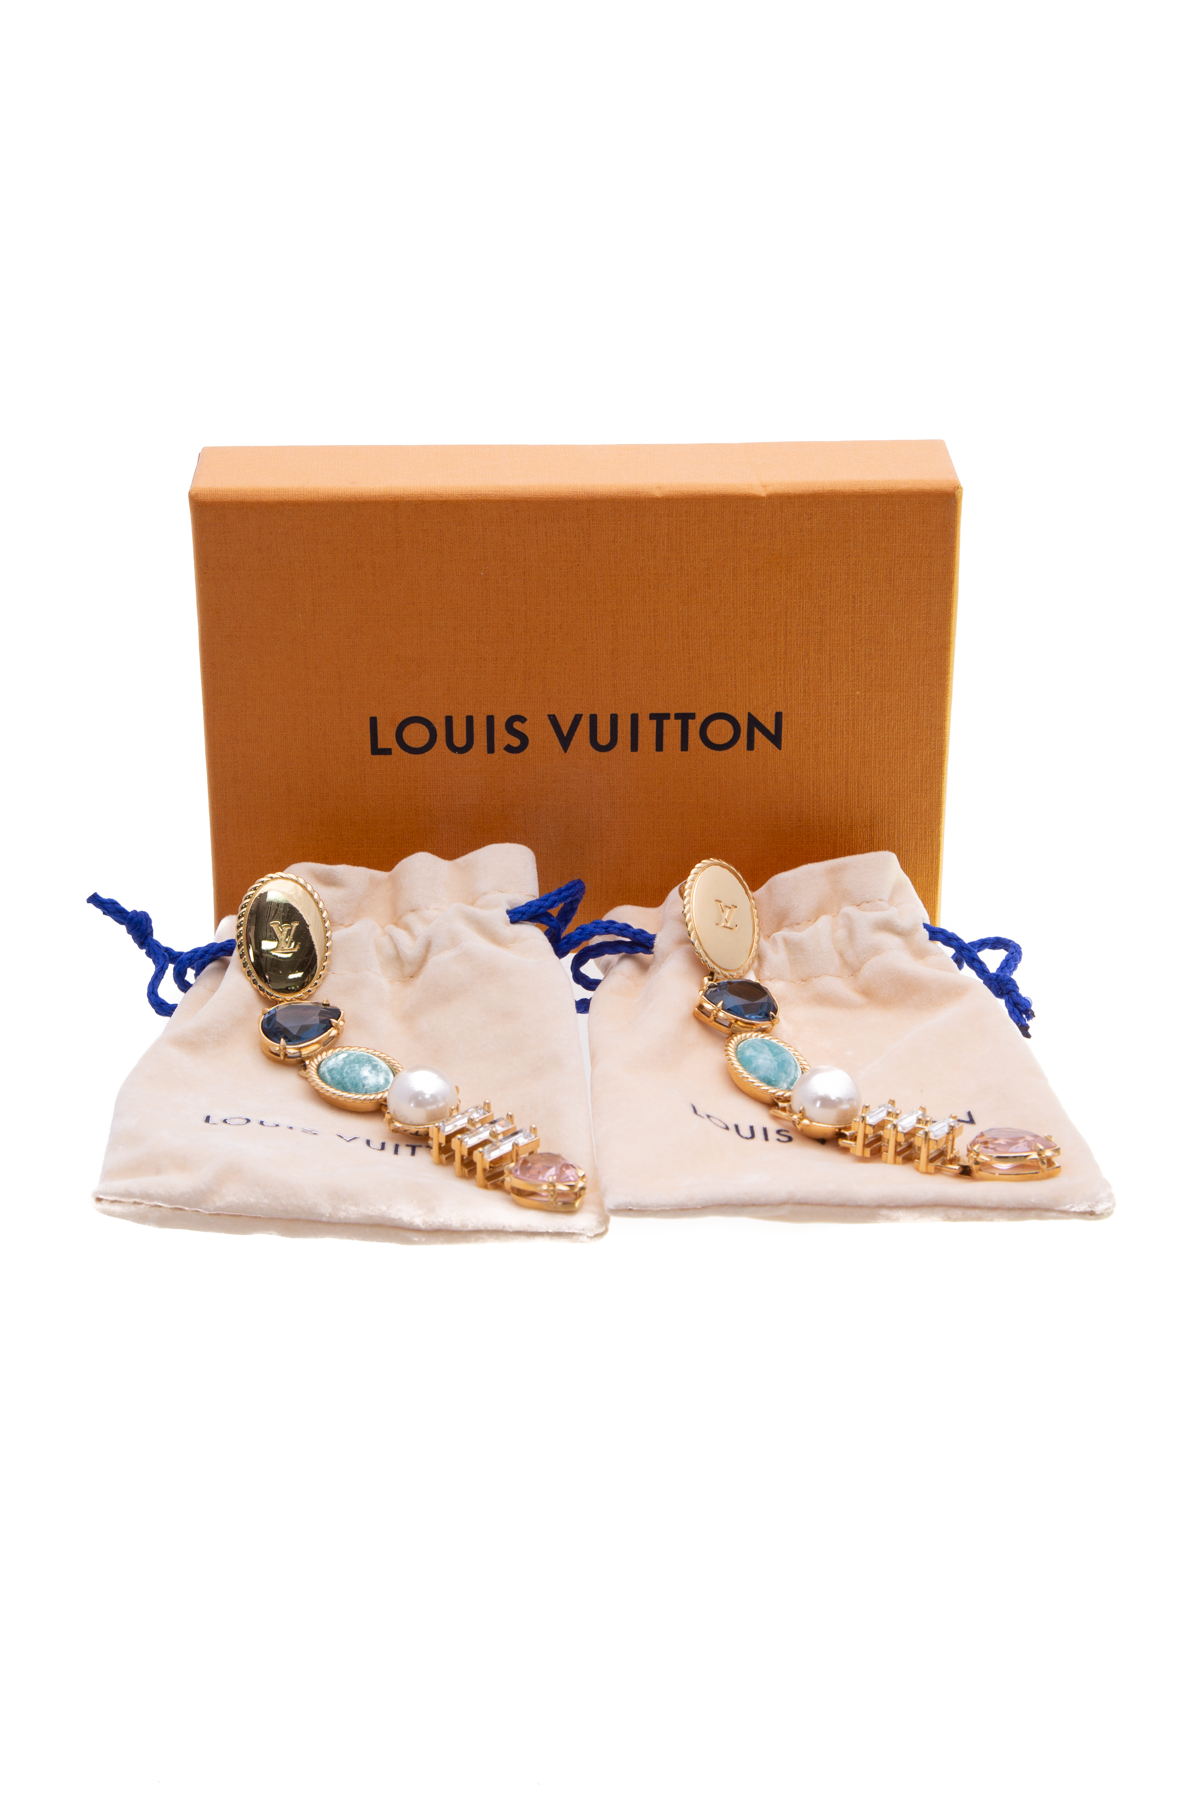 LV earrings  Louis vuitton earrings, Favorite jewelry, Louie vuitton